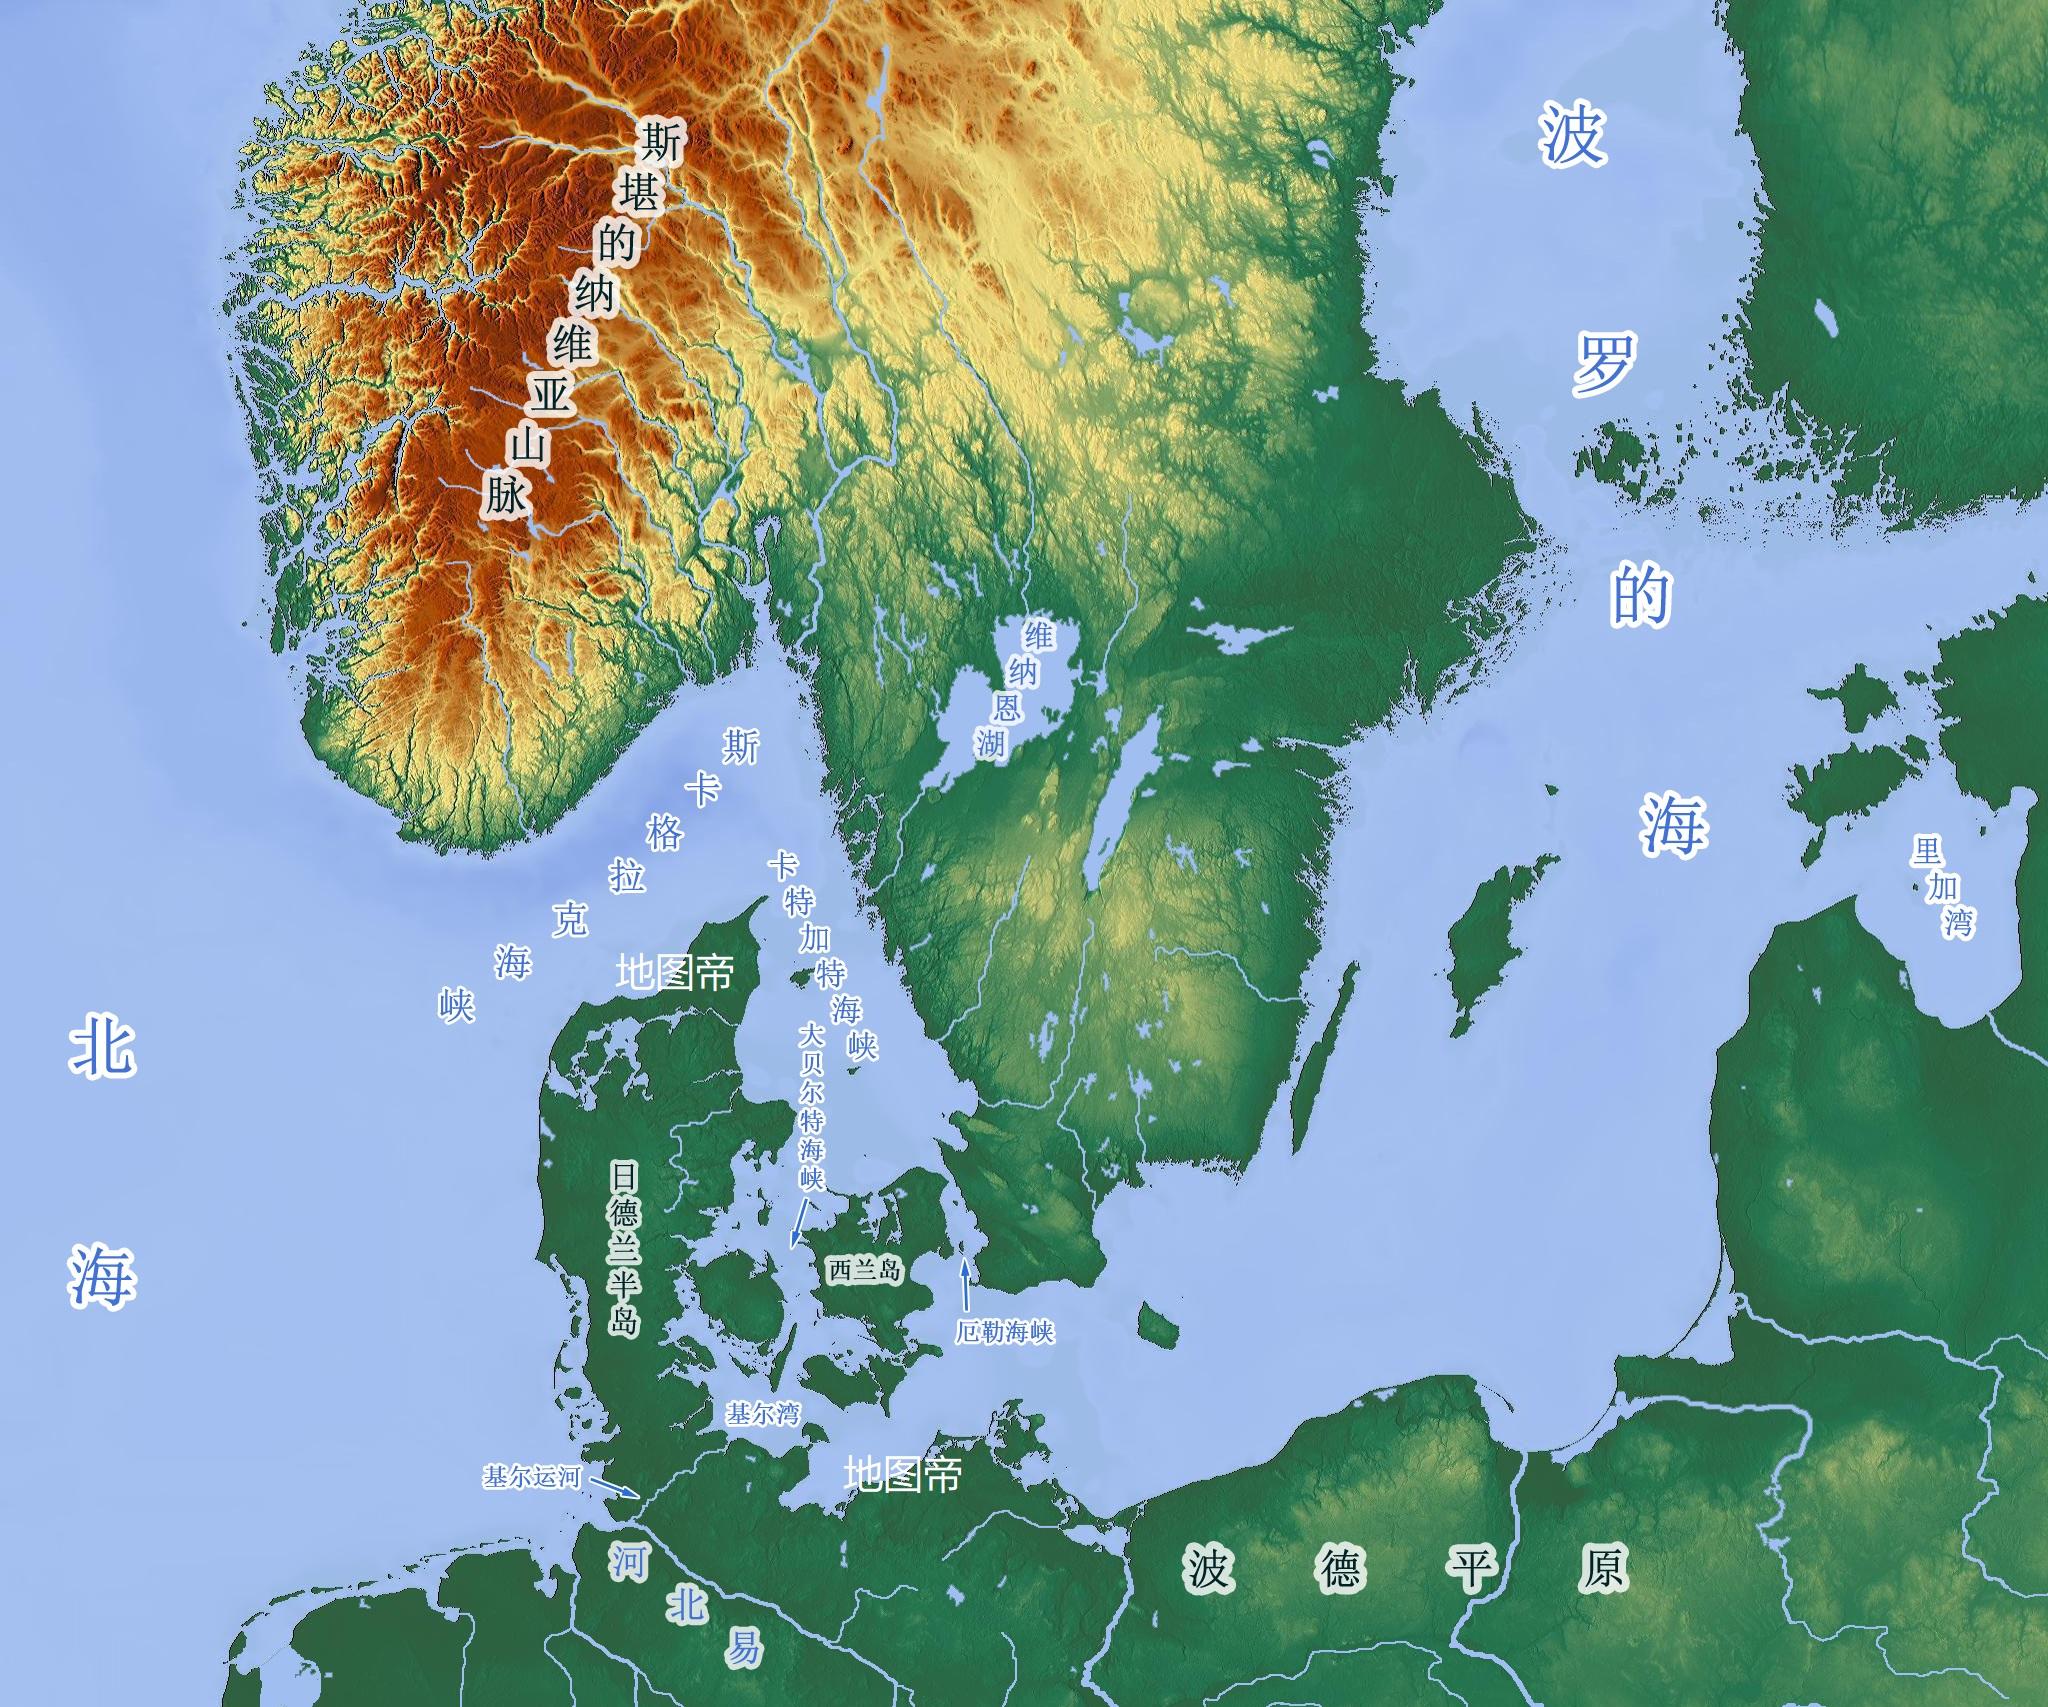 基尔运河 — 连接波罗的海和北海的海道 库存图片. 图片 包括有 连接, 小船, 水平, 字段, 火箭筒 - 188457949